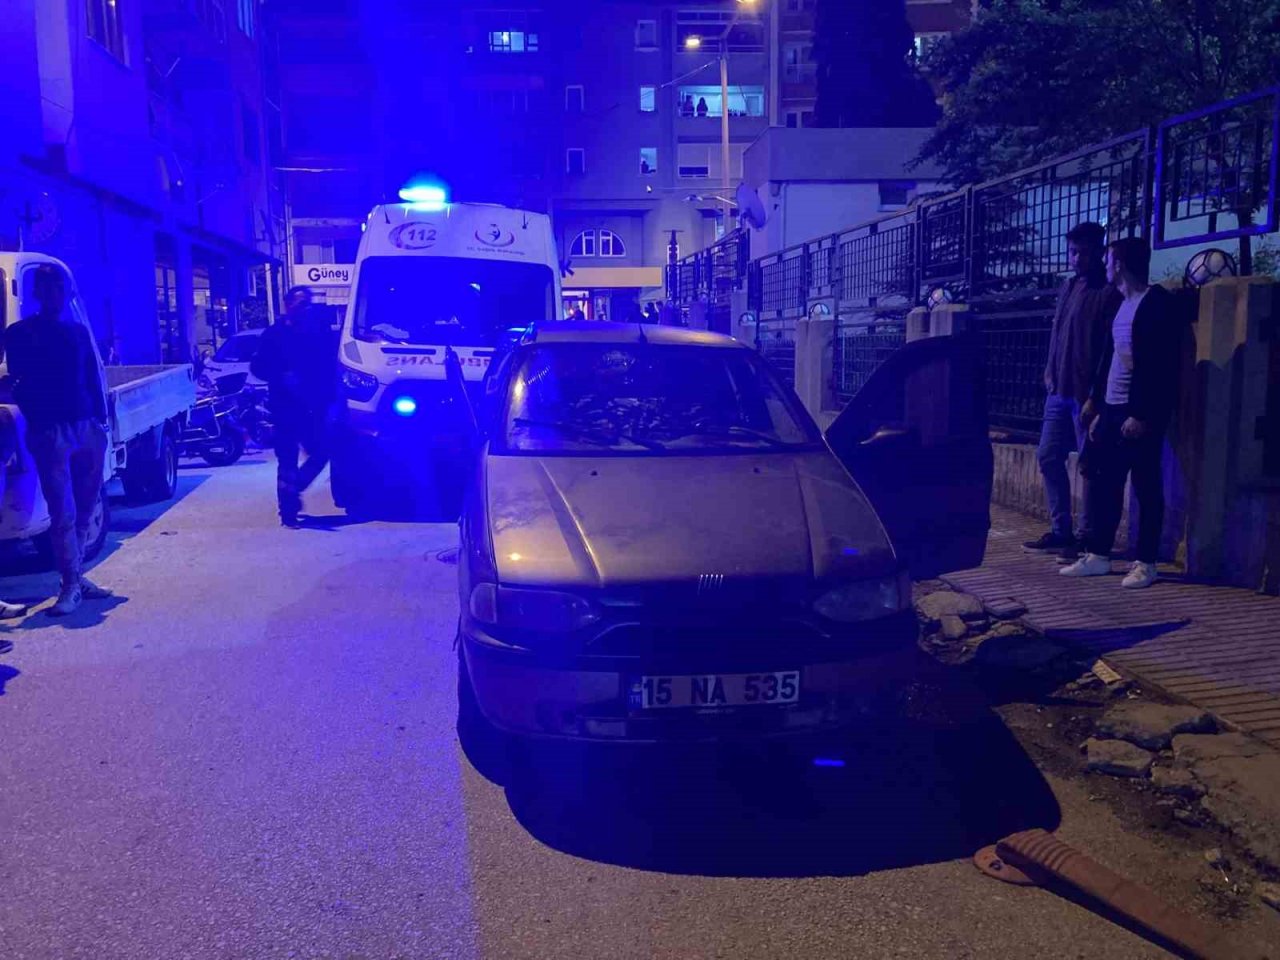 Burdur’da alkollü sürücünün karıştığı kazada 1 kişi yaralandı